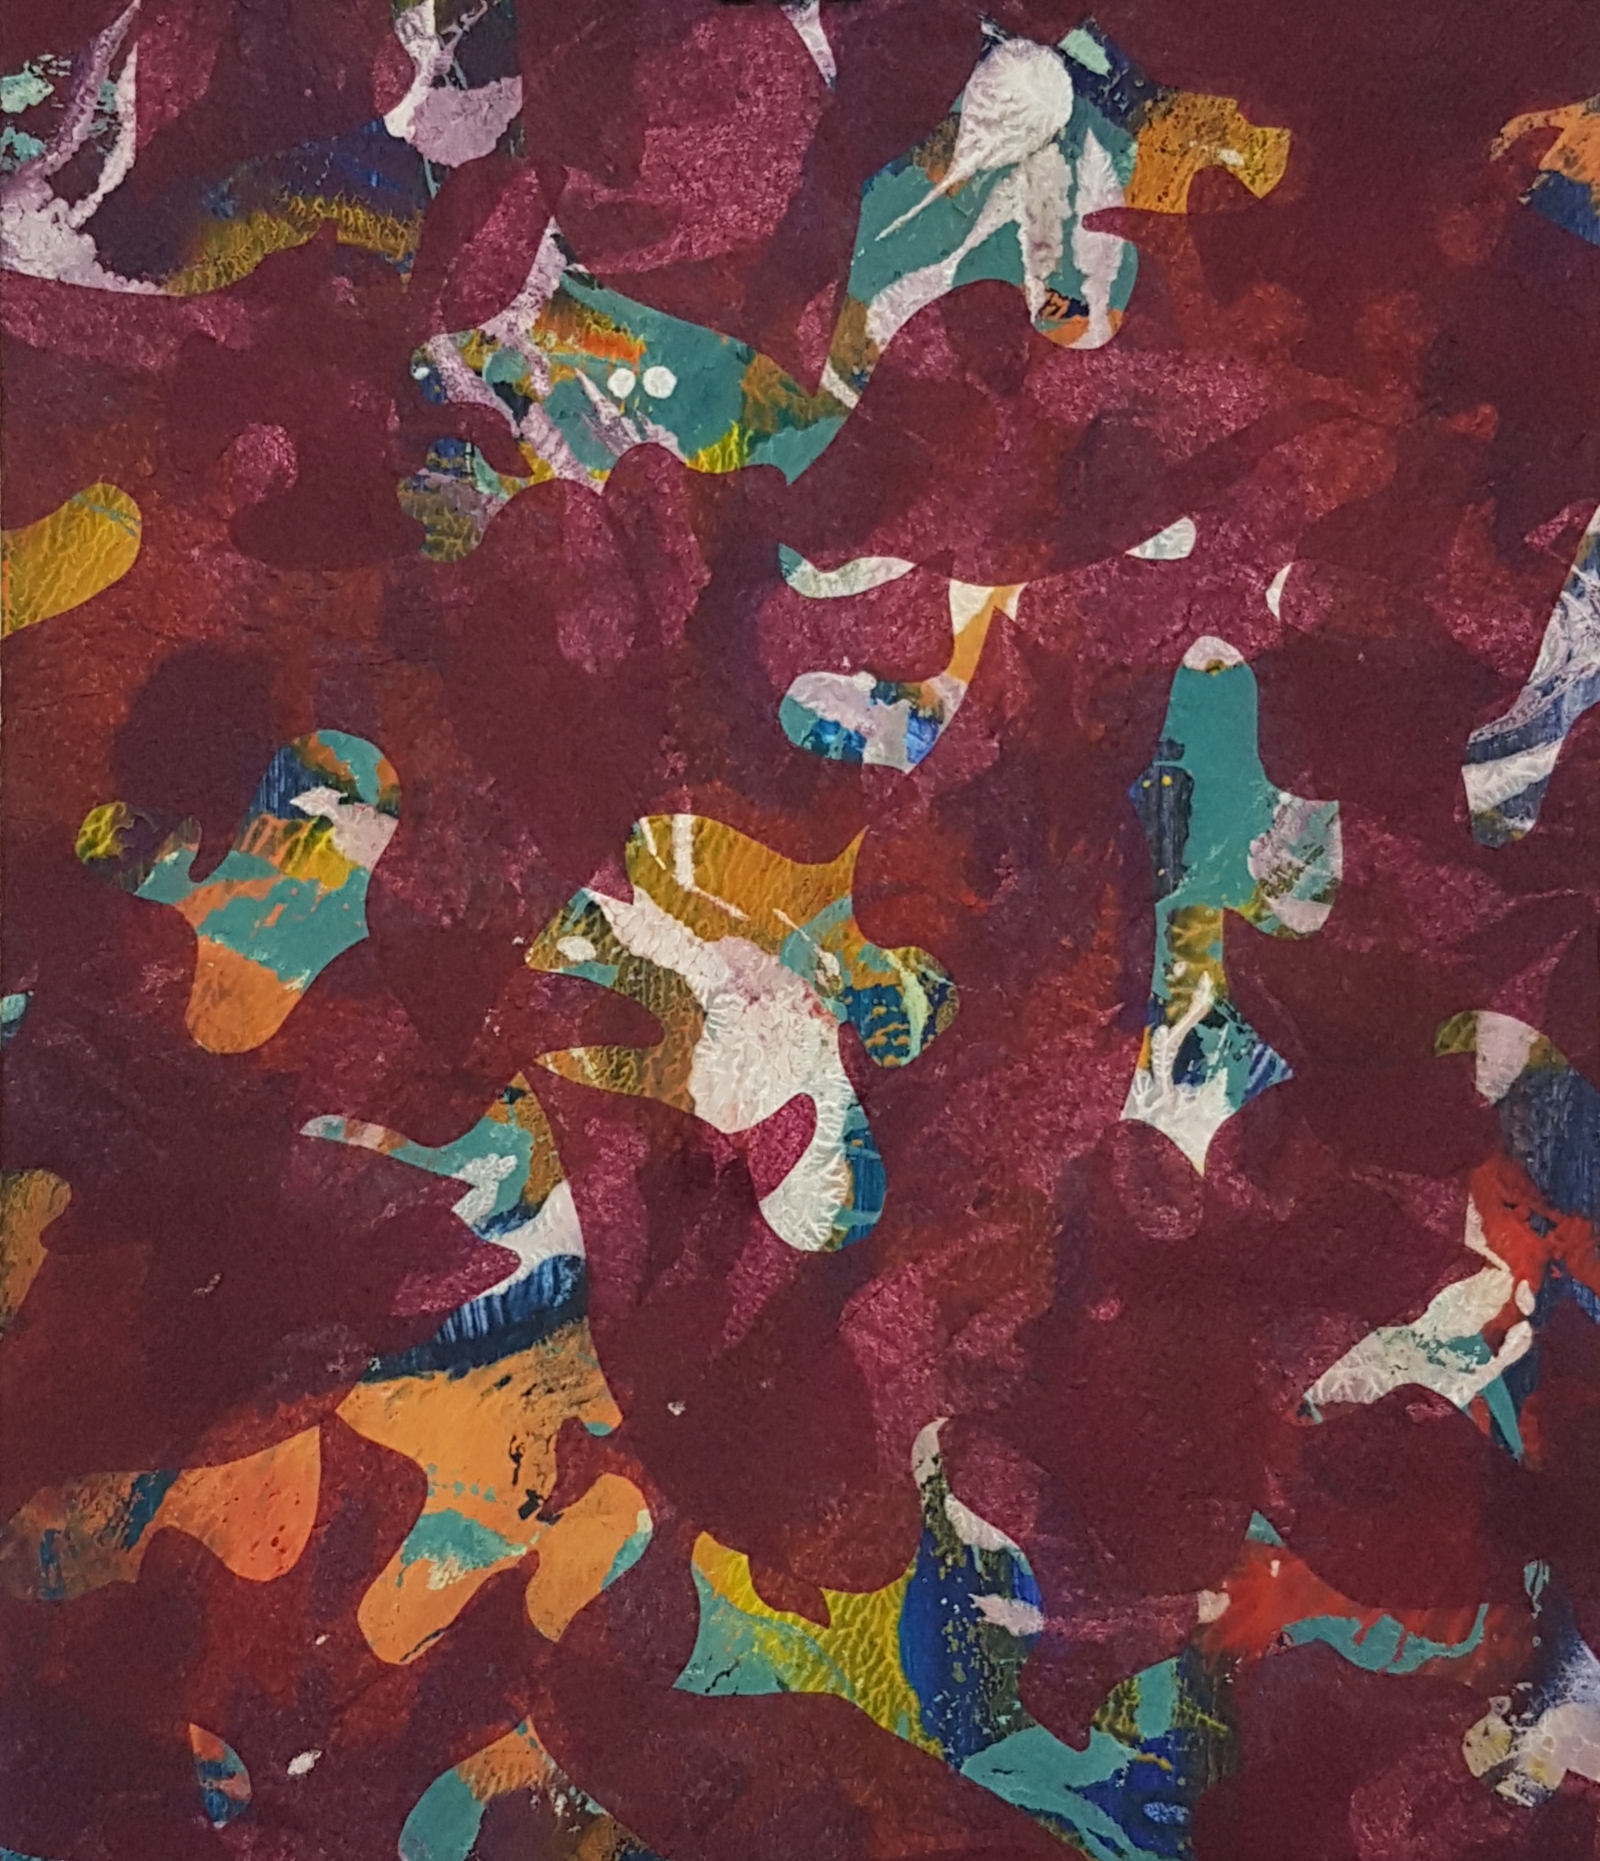 O.T., 2019, 21 x 29,5 cm, Mischtechnik auf Papier, Acryl, Collage, Monotypie-Druck